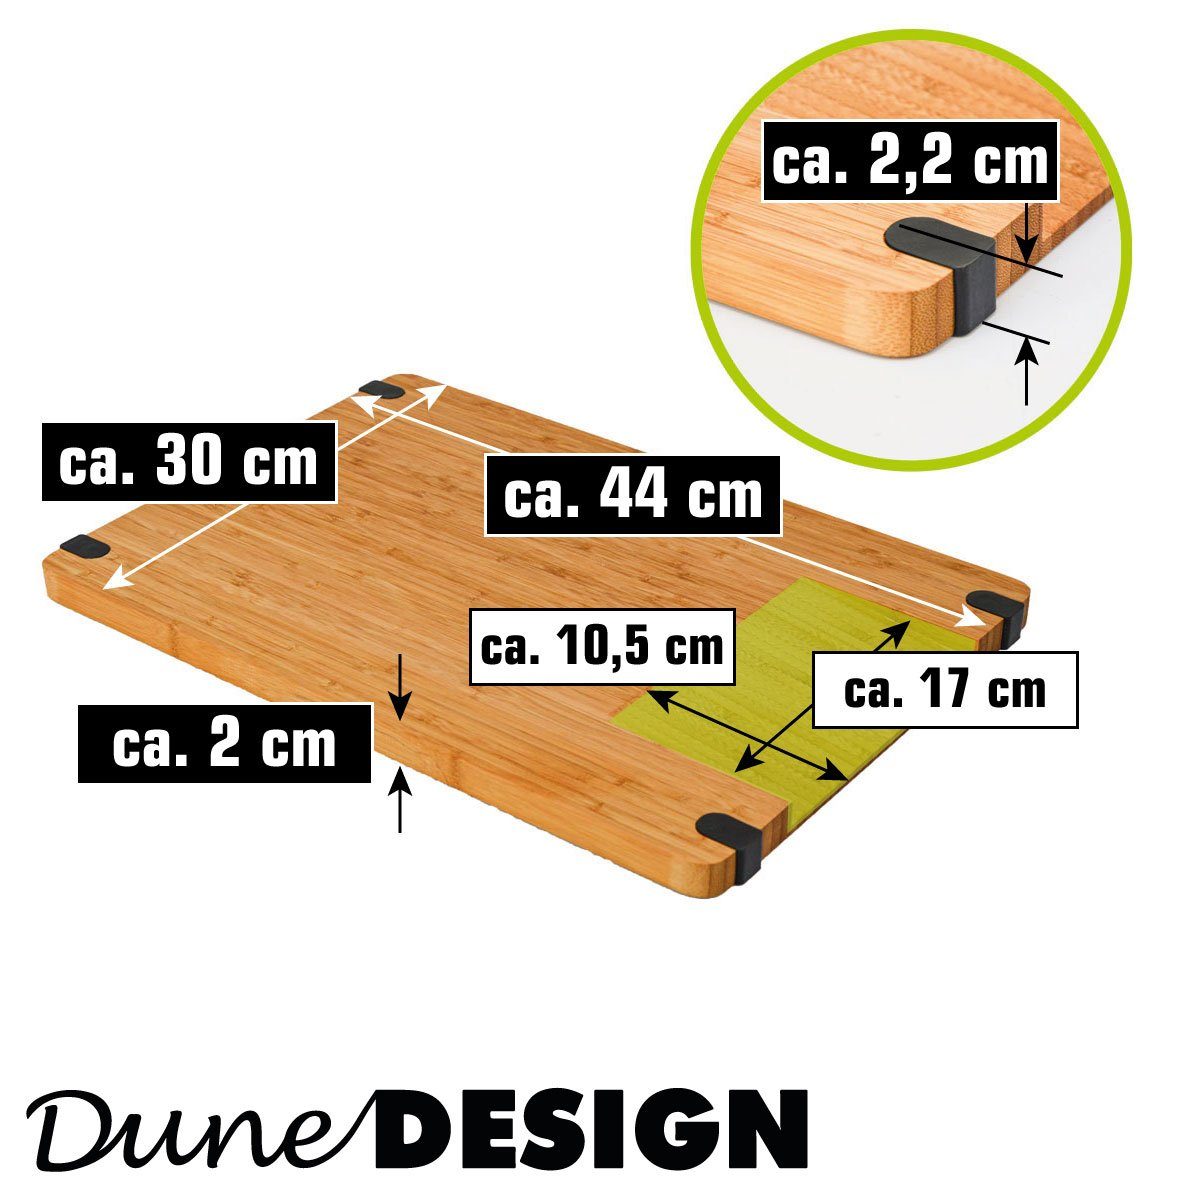 Hackbrett mit DuneDesign XL Holz, Antirutsch, Schneidebrett Ausguss 44x30x2cm Massiv Schneidebrett Holz